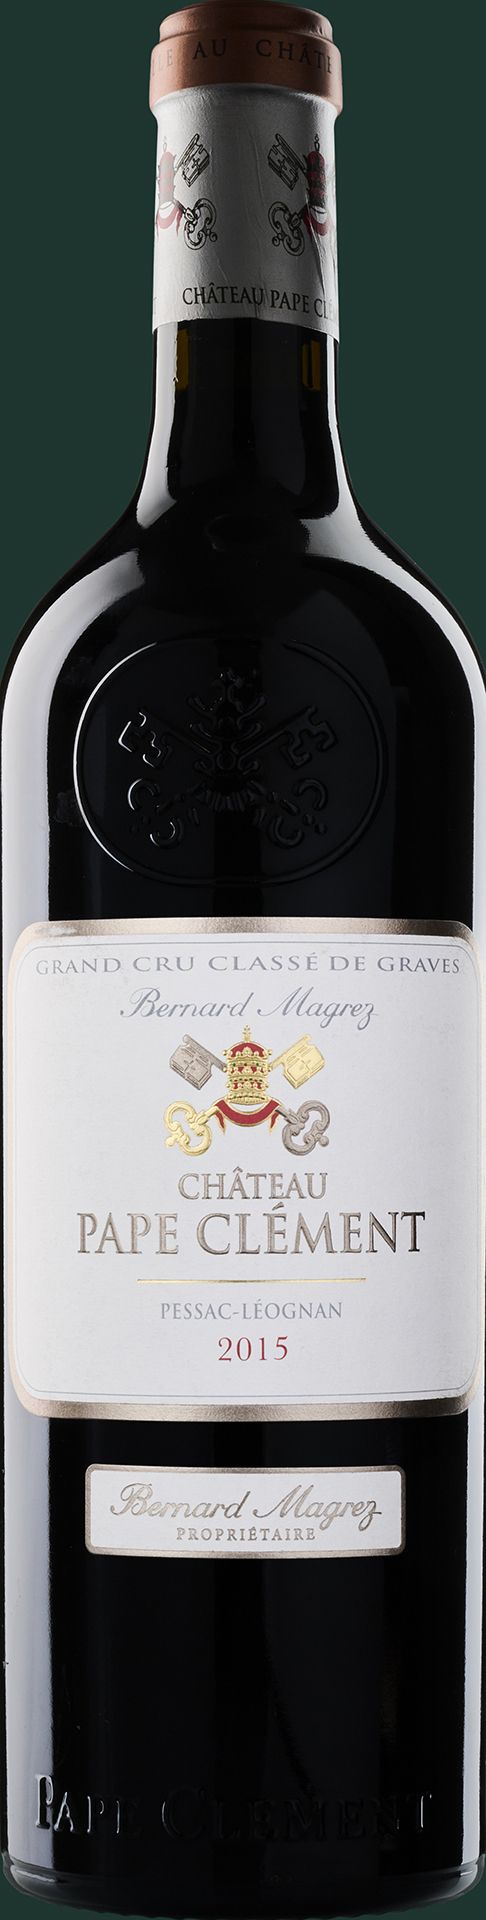 WBSS24 Château Pape Clément Rouge Grand Cru Classé des Graves 2015